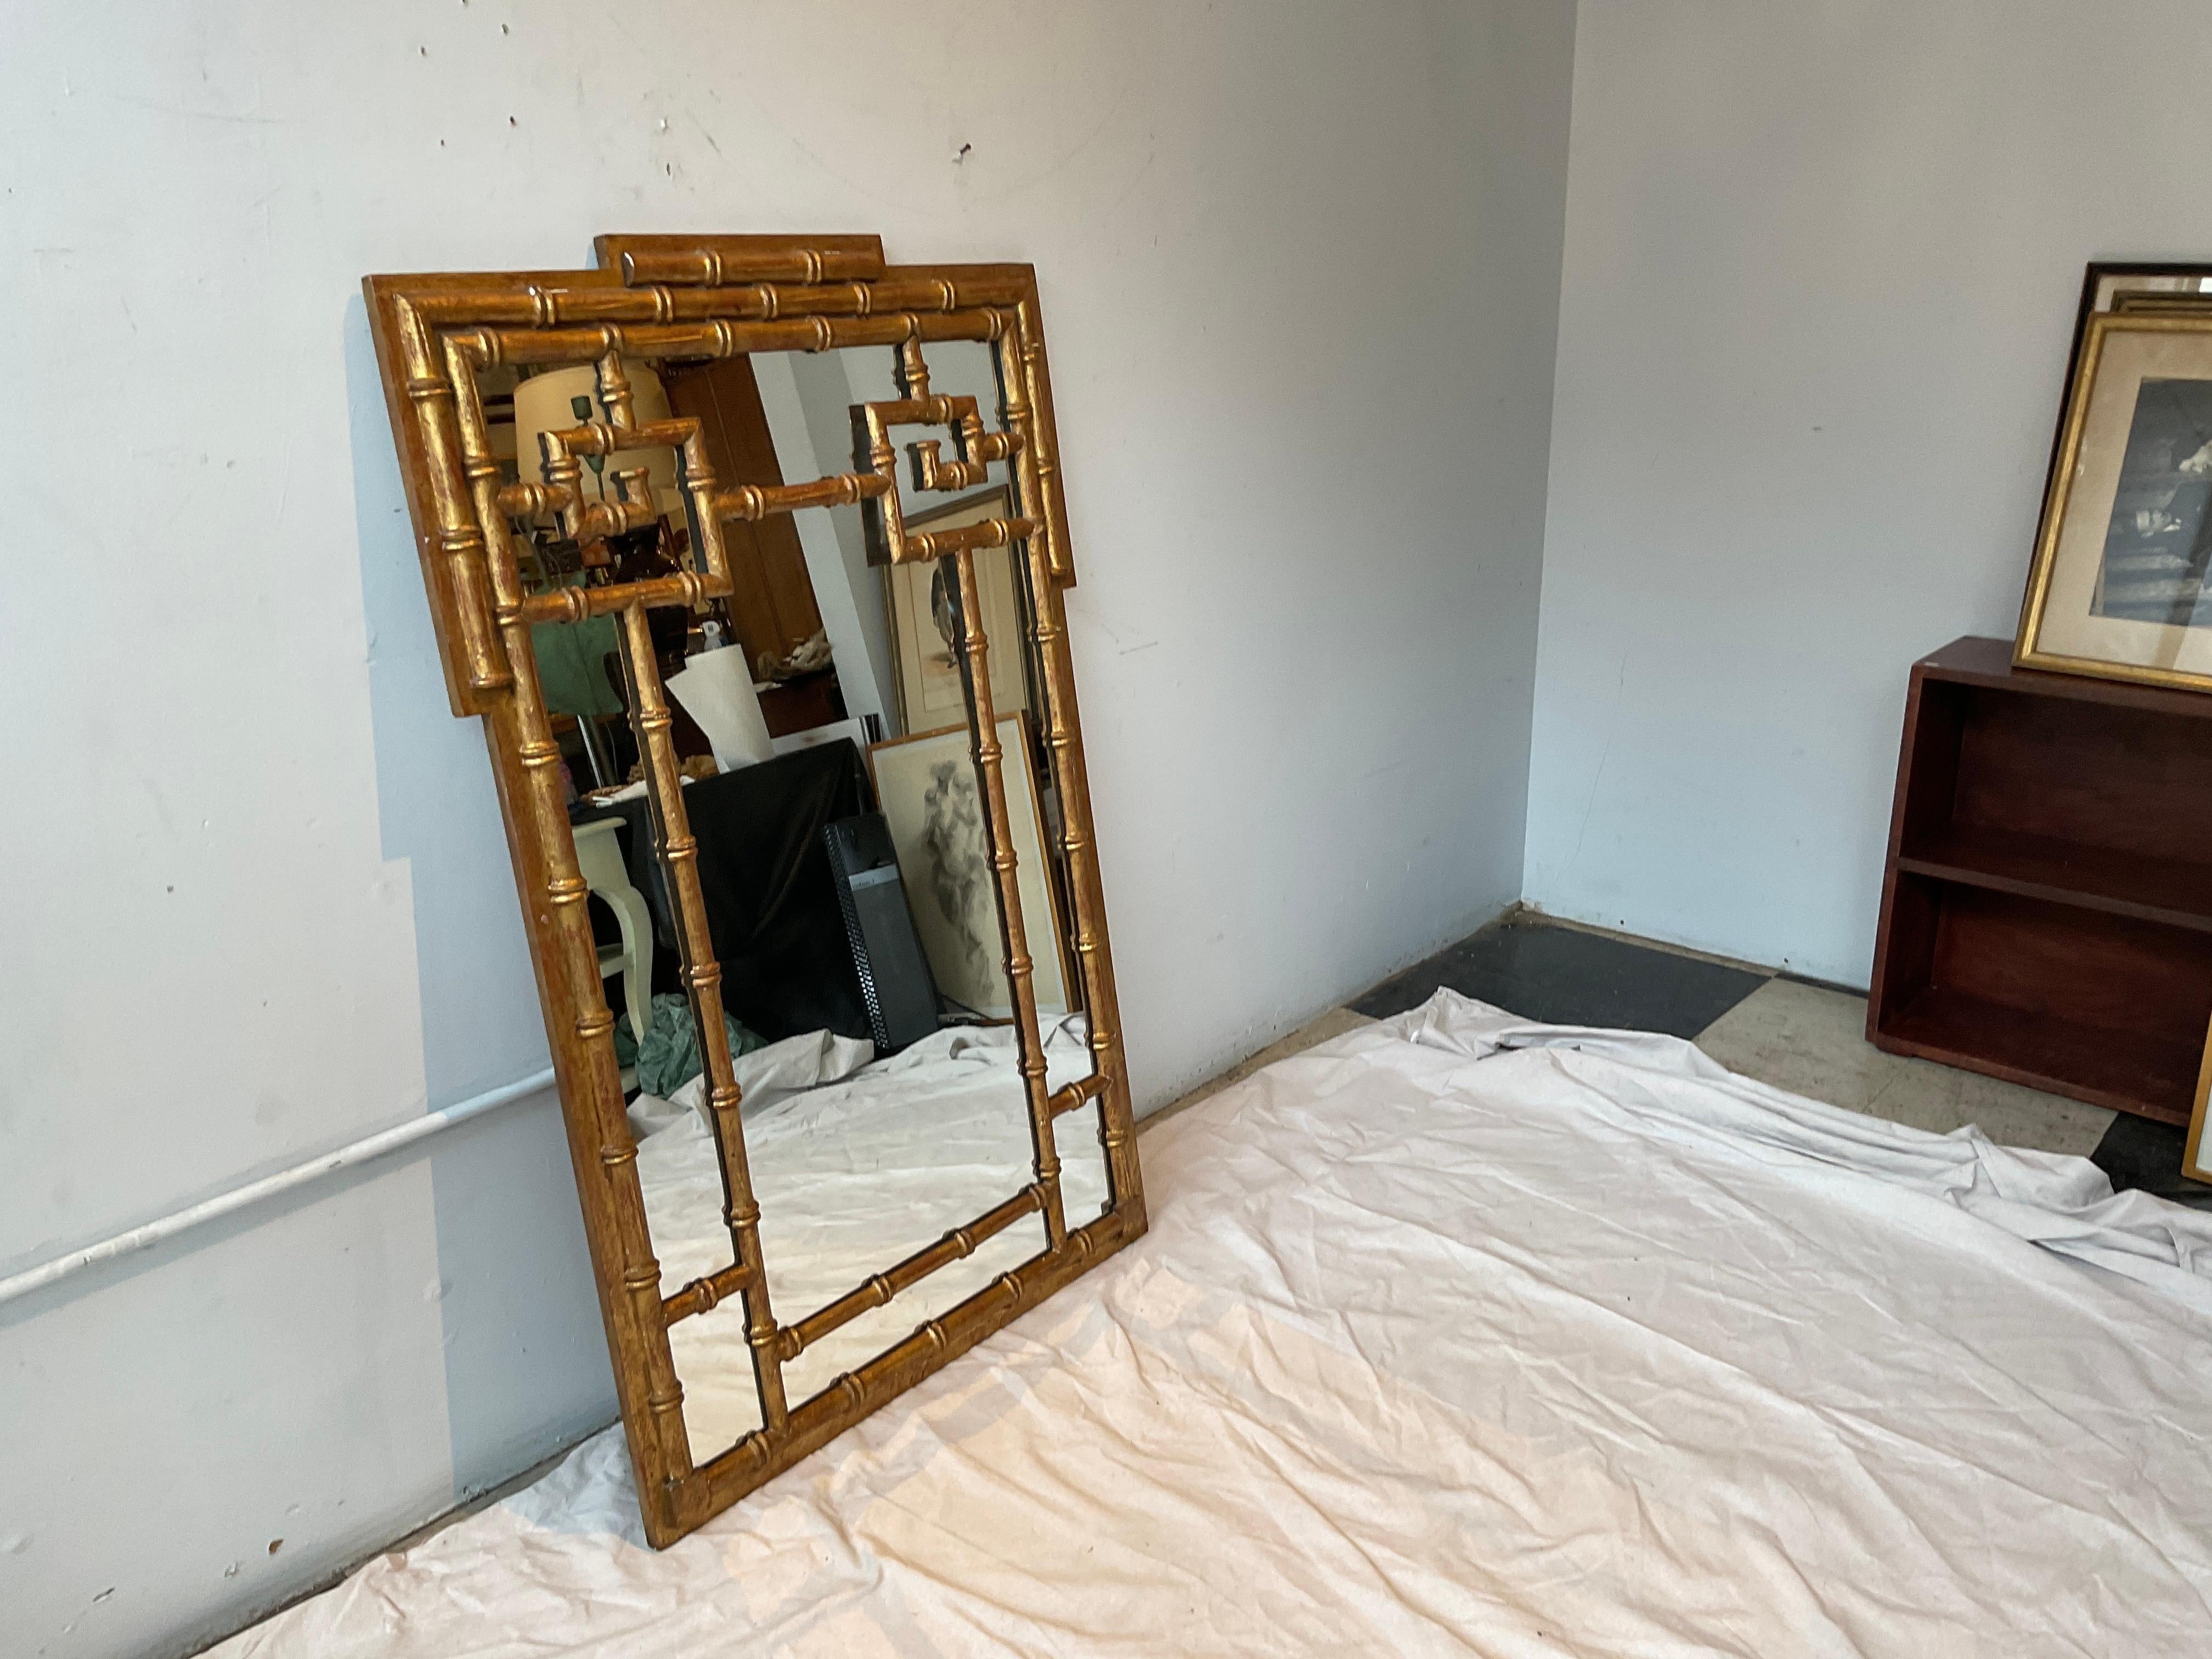 1960er Jahre Handgeschnitzter Spiegel aus vergoldetem Holz mit griechischem Schlüssel, hergestellt in Italien. Einige Vergoldungen fehlen.